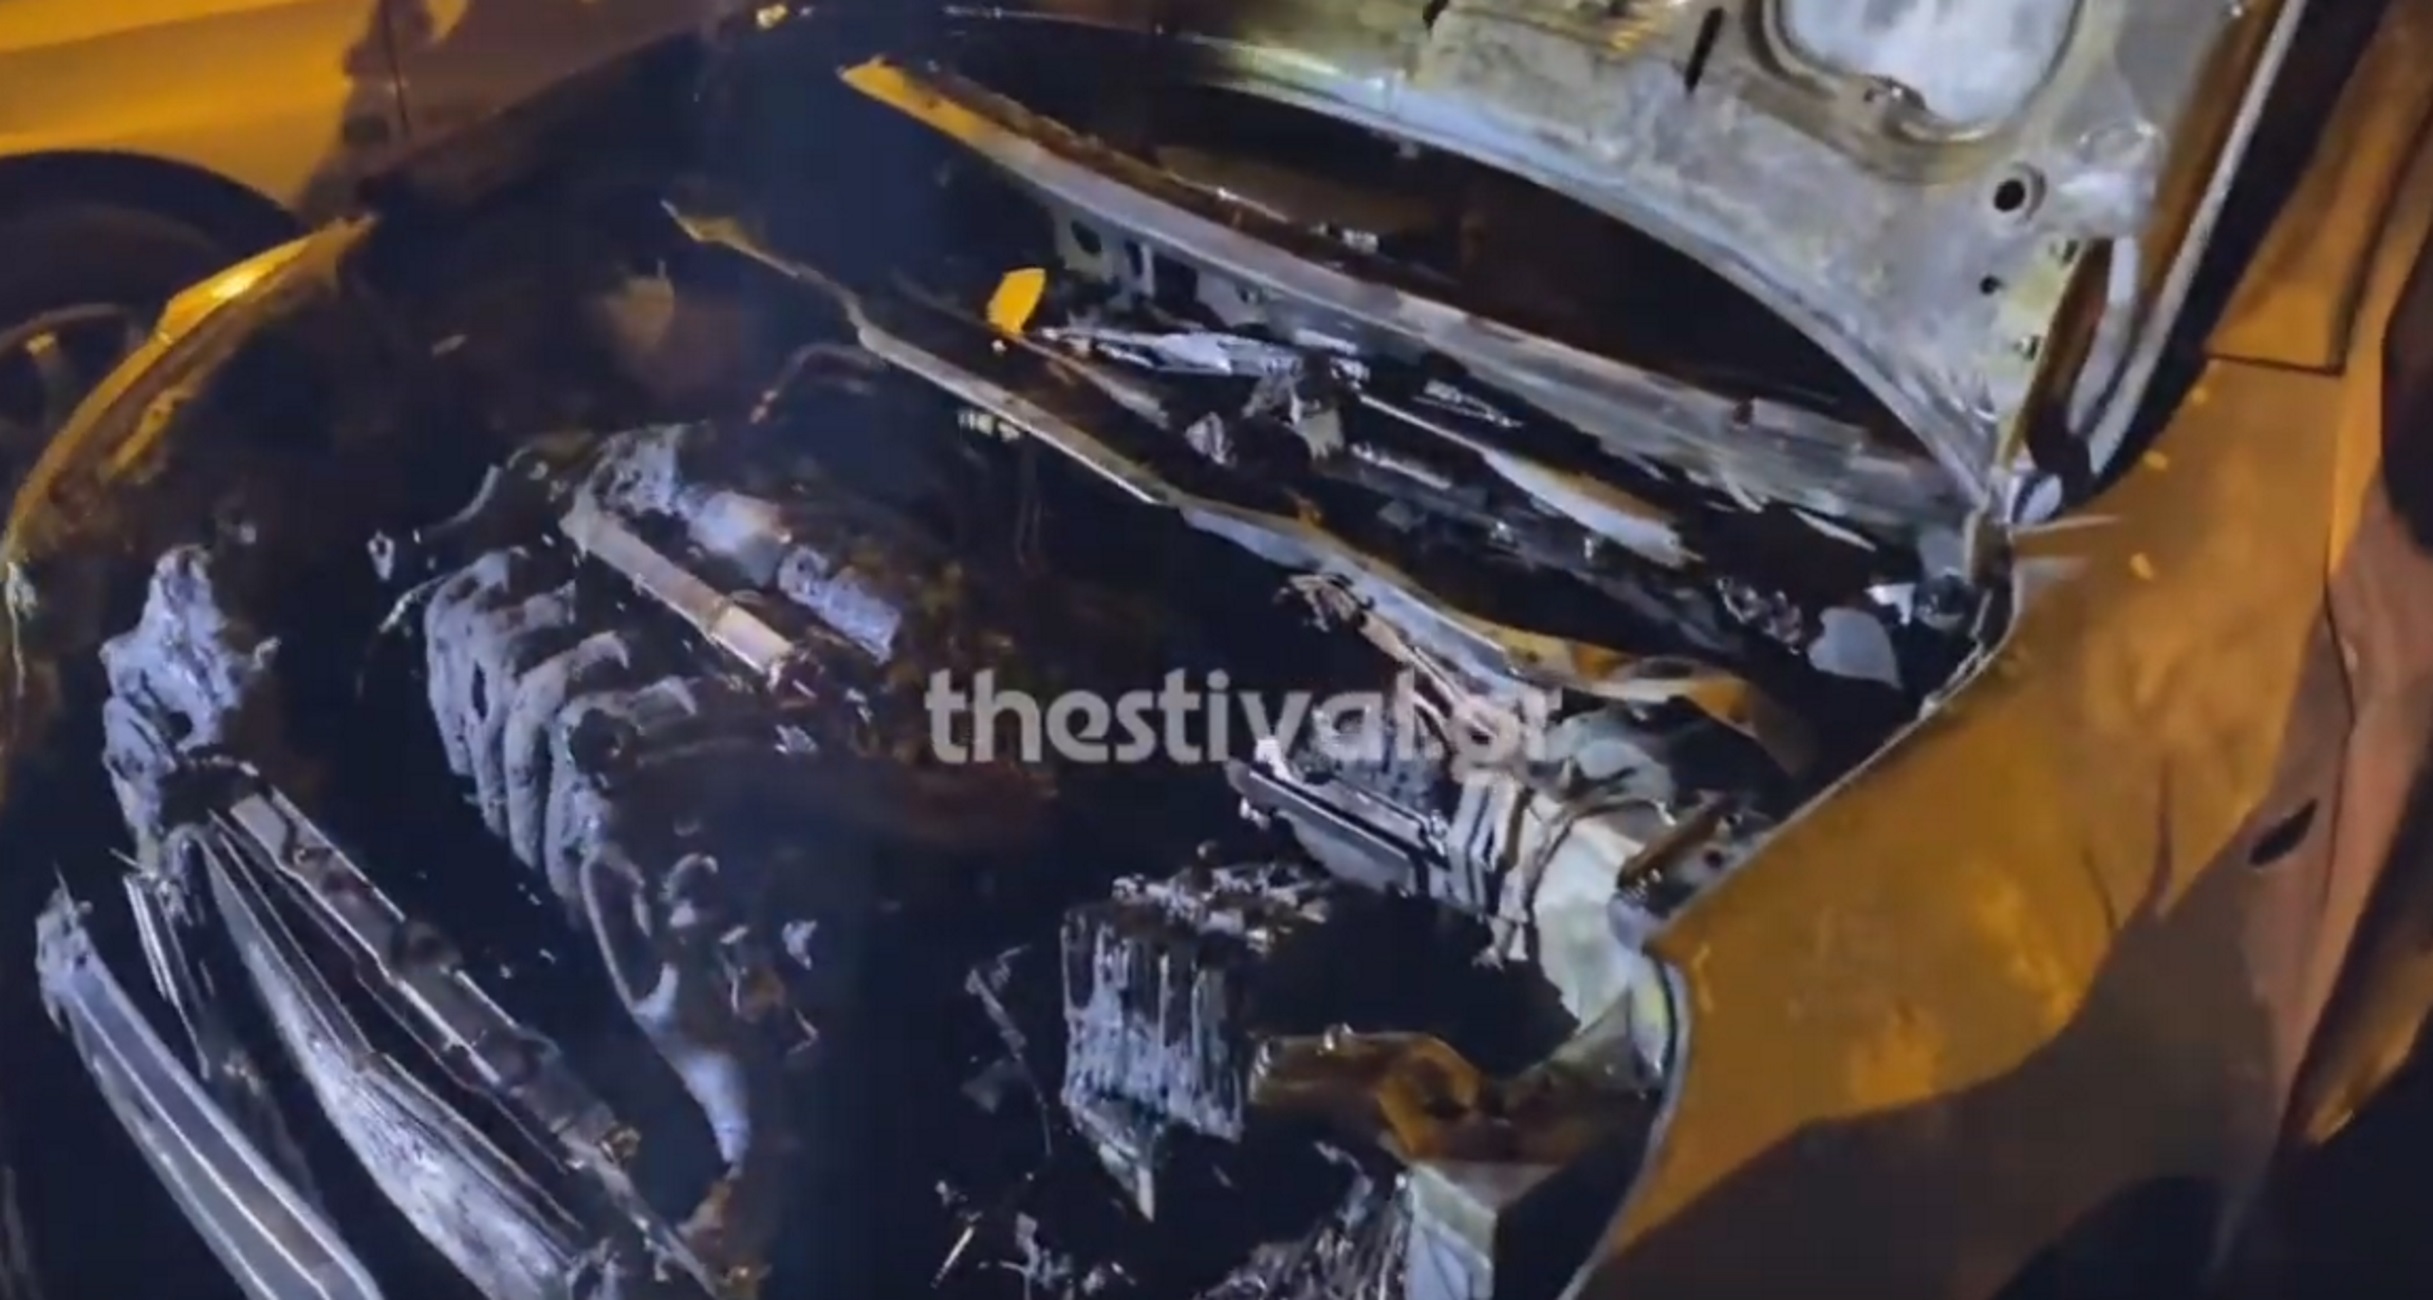 Θεσσαλονίκη: Έκαψαν αυτοκίνητα εταιρείας σεκιούριτι! Αυτοψία στο σημείο μετά τον εμπρησμό (Βίντεο)